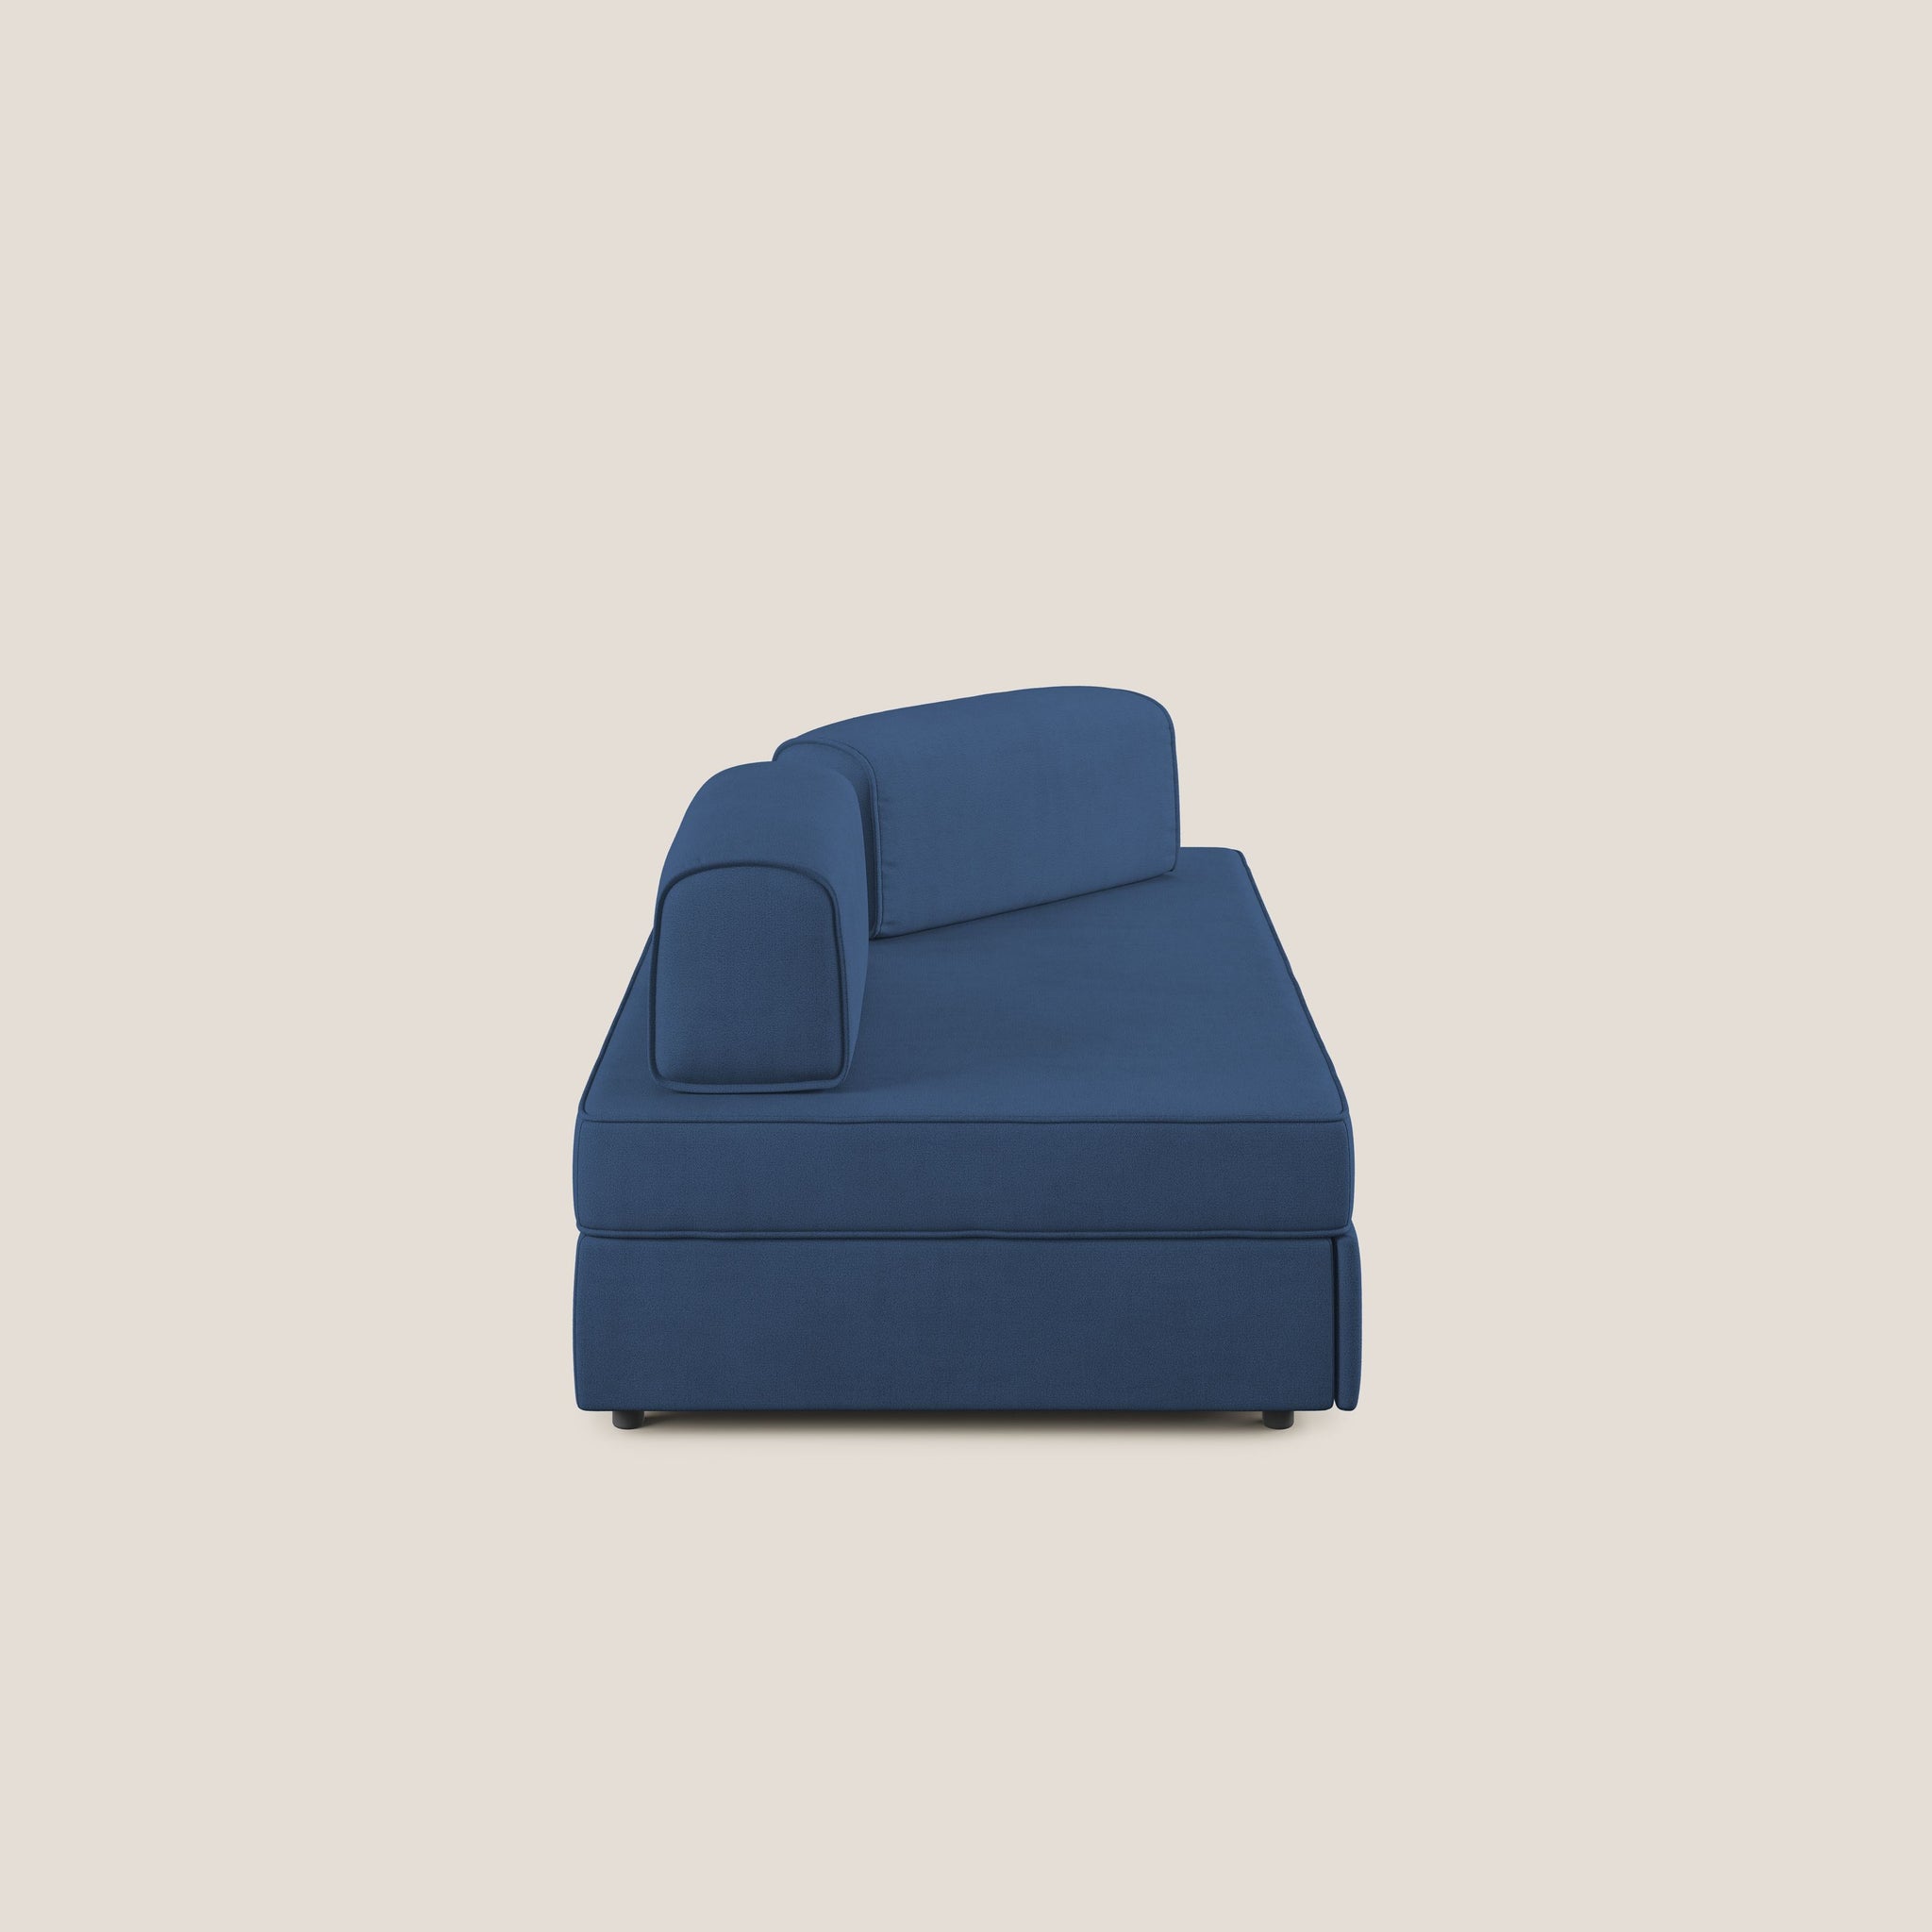 Liberty divano con pouf estraibile e schienali movibili in tessuto morbido impermeabile T02